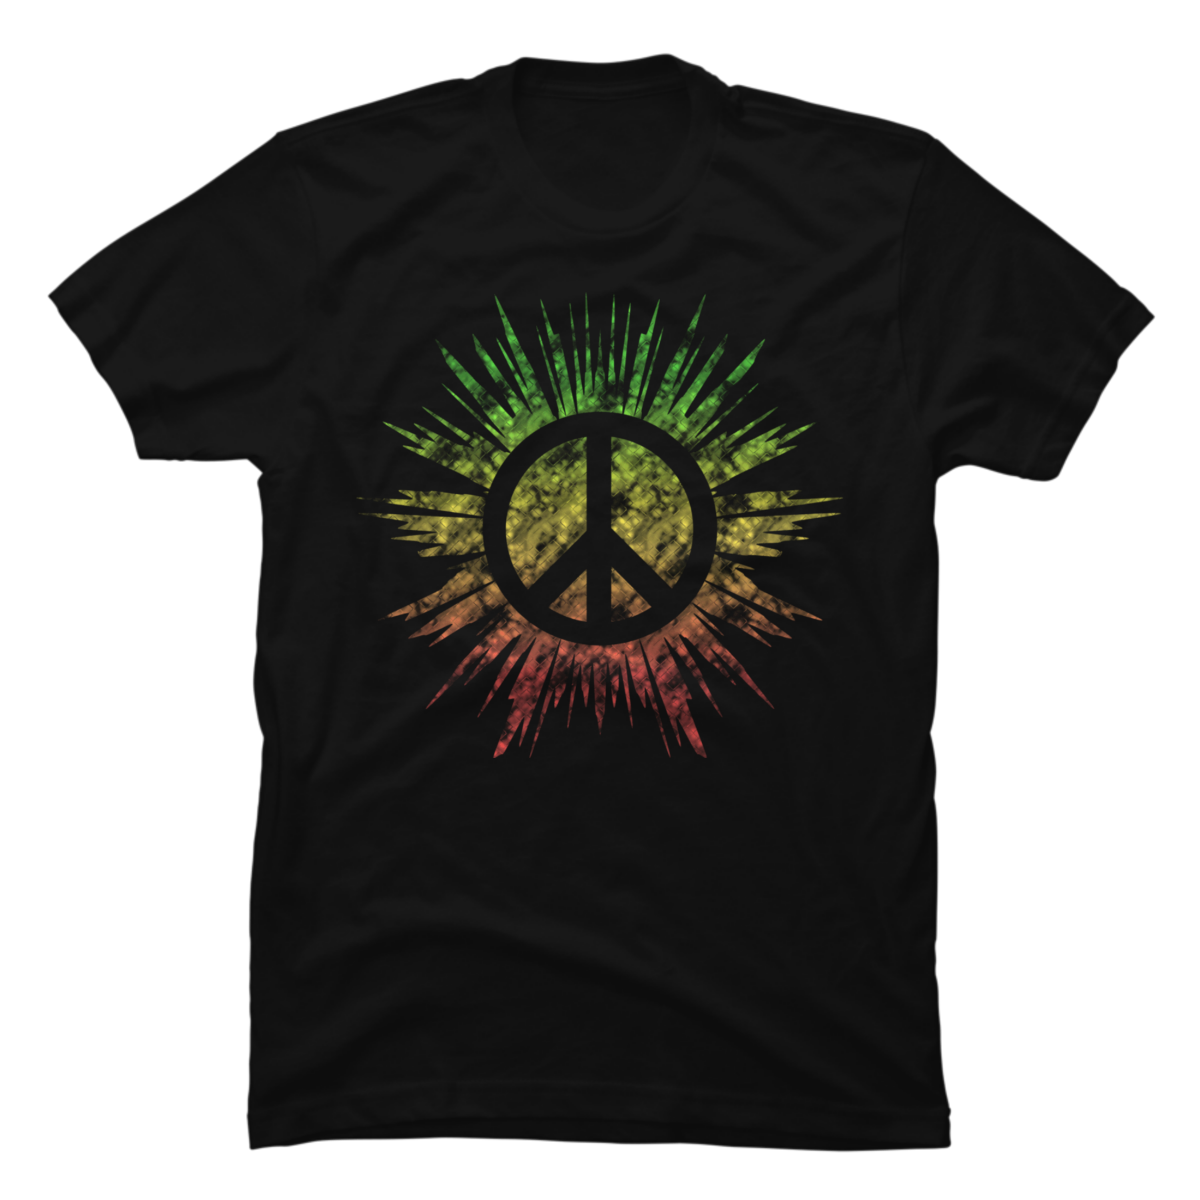 peace sign tee shirt